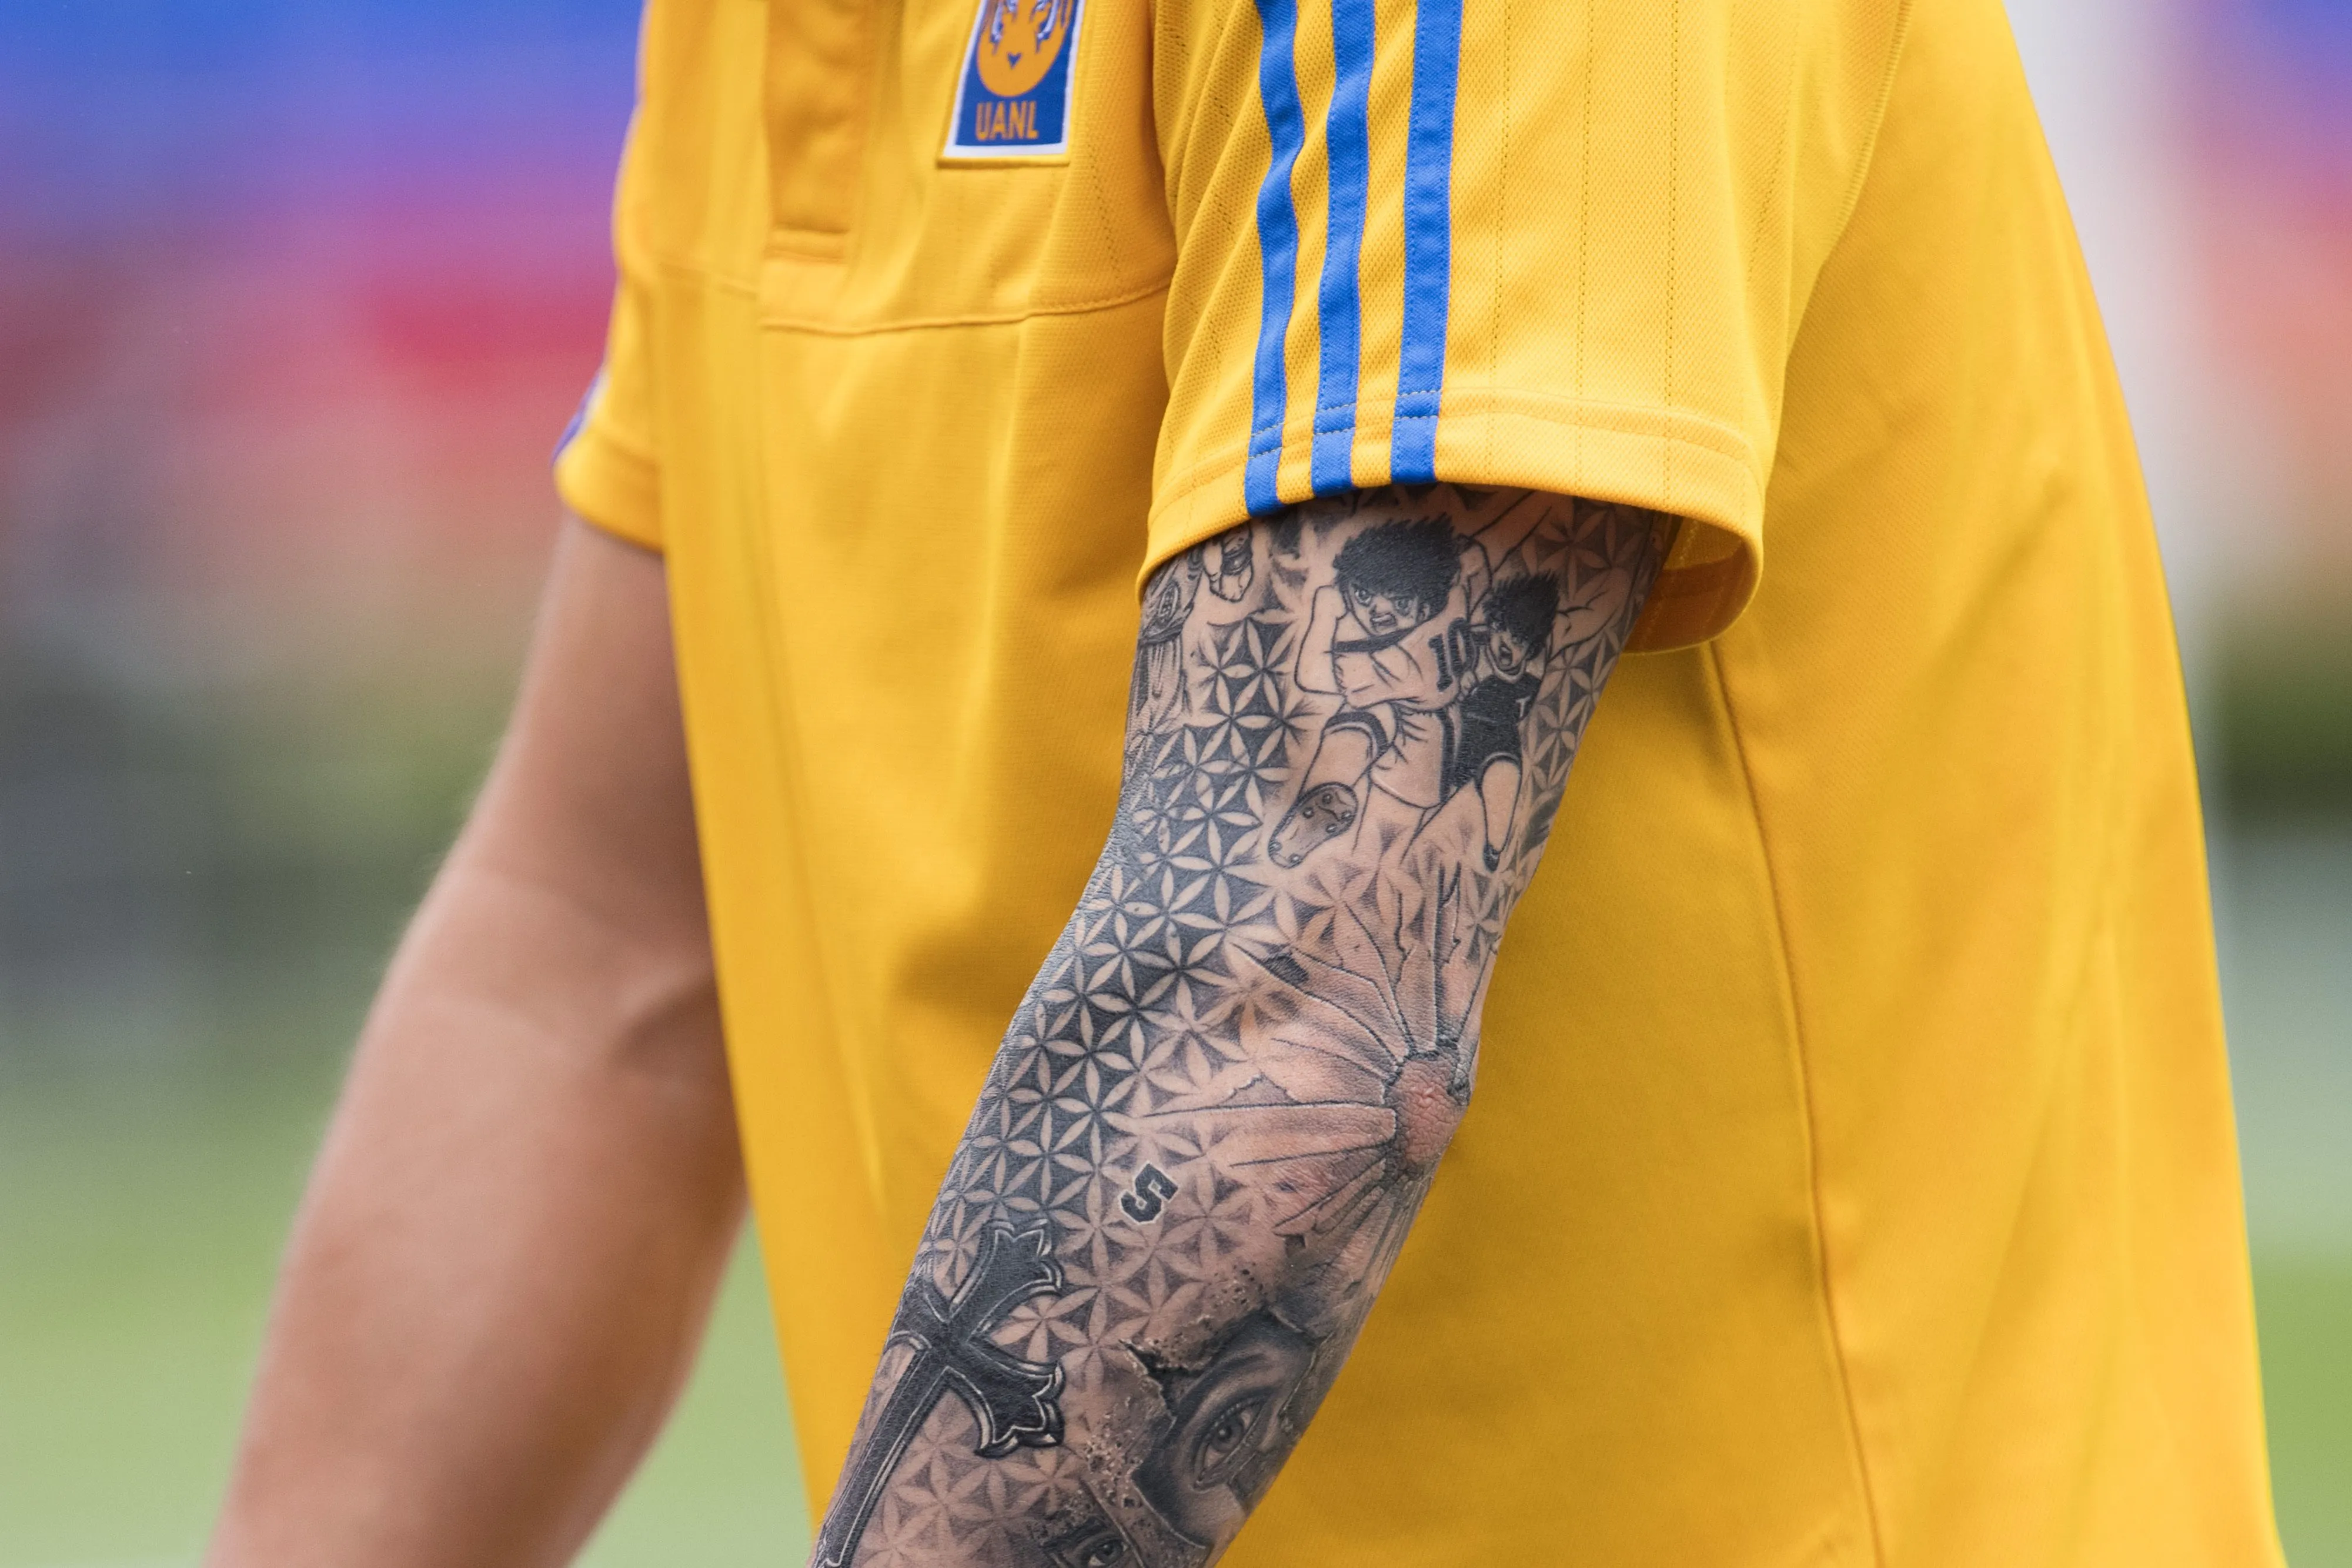 Jugadores de la Liguilla lucen tatuajes llamativos | TUDN Liga MX | TUDN